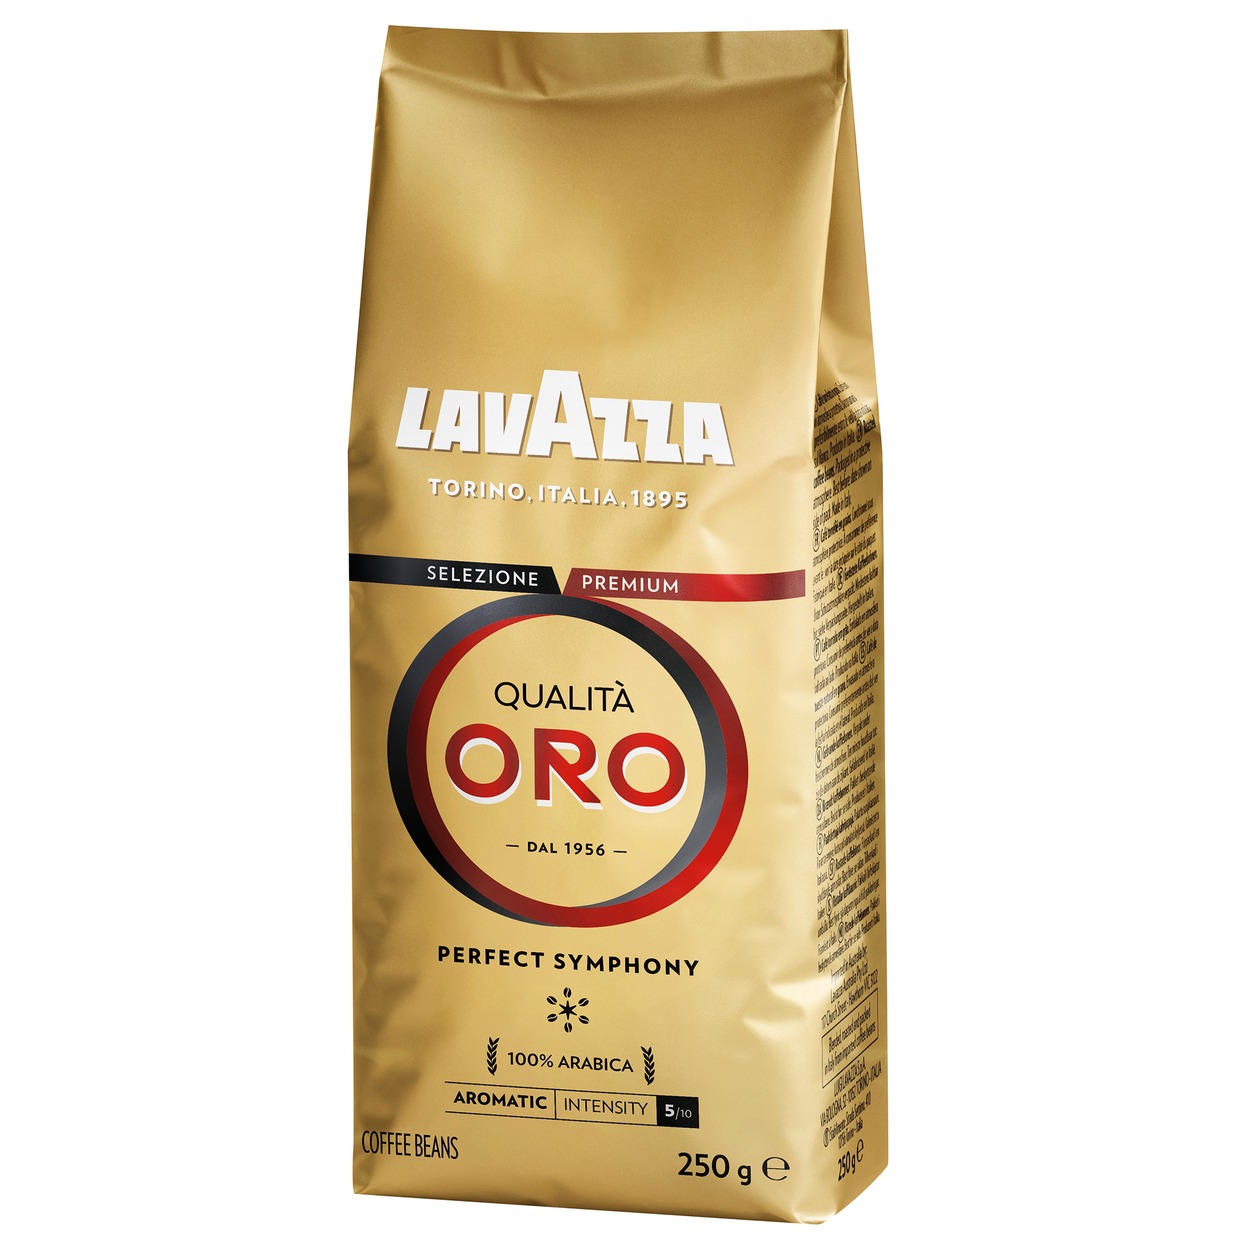 Кофе в зернах Lavazza Qualita Oro 250г по акции в Пятерочке